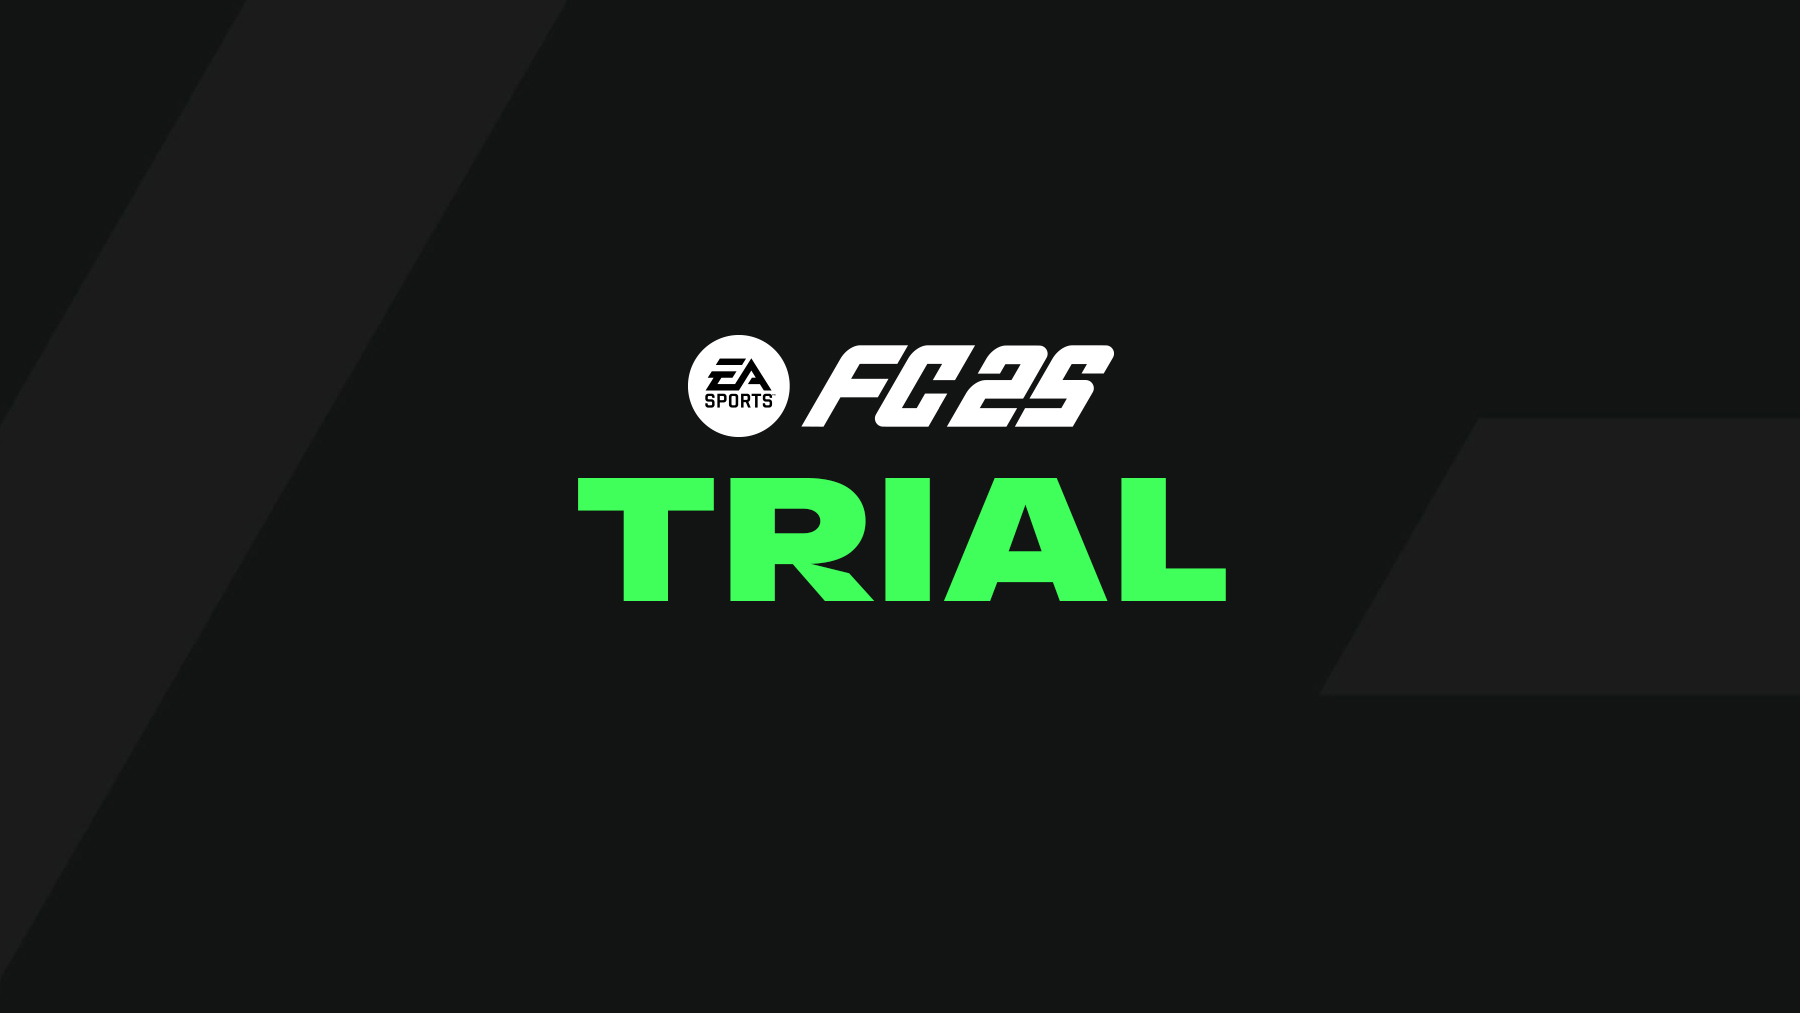 FC 25 Trial